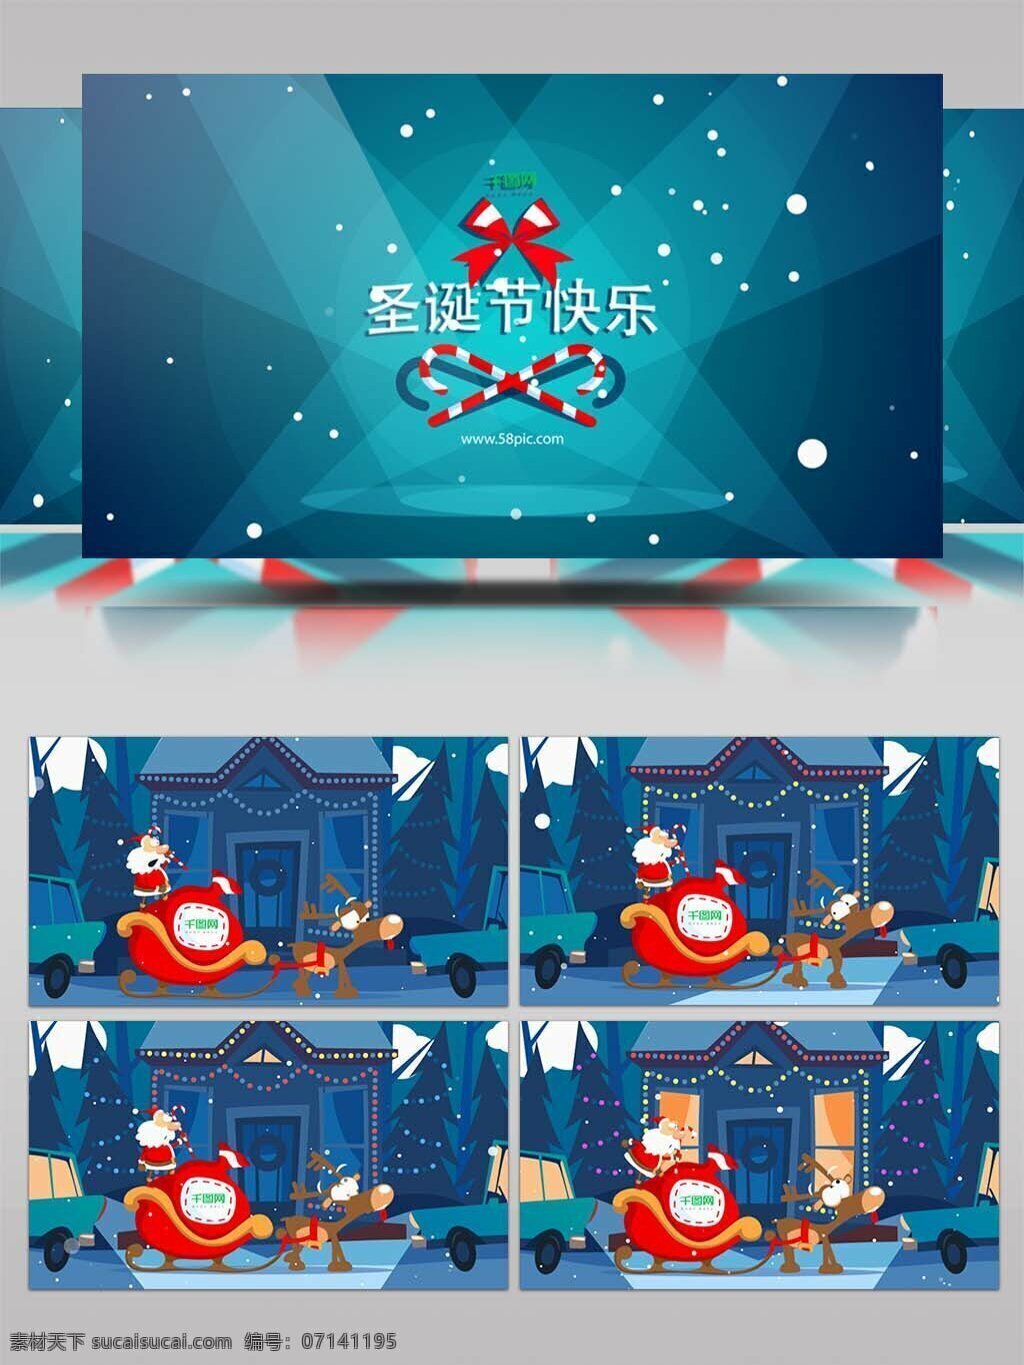 圣诞老人 乘坐 雪橇 车 新年 礼物 卡通 开场 模板 圣诞快乐 新年快乐 平安夜 圣诞夜 送 祝福 圣诞节 电子贺卡 圣诞节视频 ae 圣诞庆典 圣诞晚会 圣诞节片头